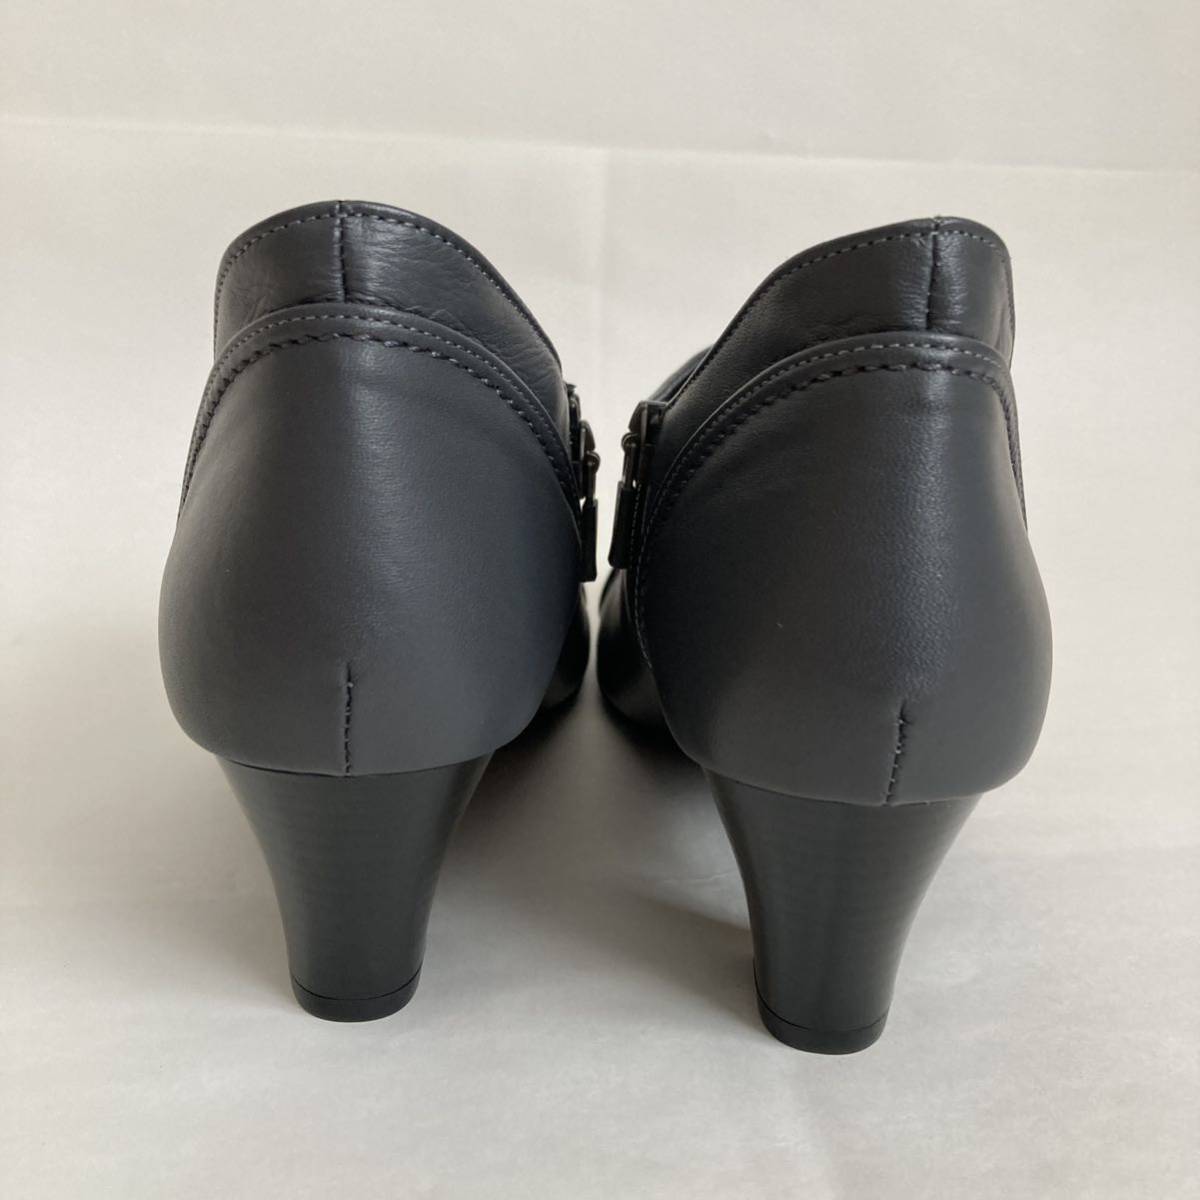 G-QUEST SELECSION Wedge подошва женский ботиночки 24.0cm серый каблук высота 6cm короткие сапоги 